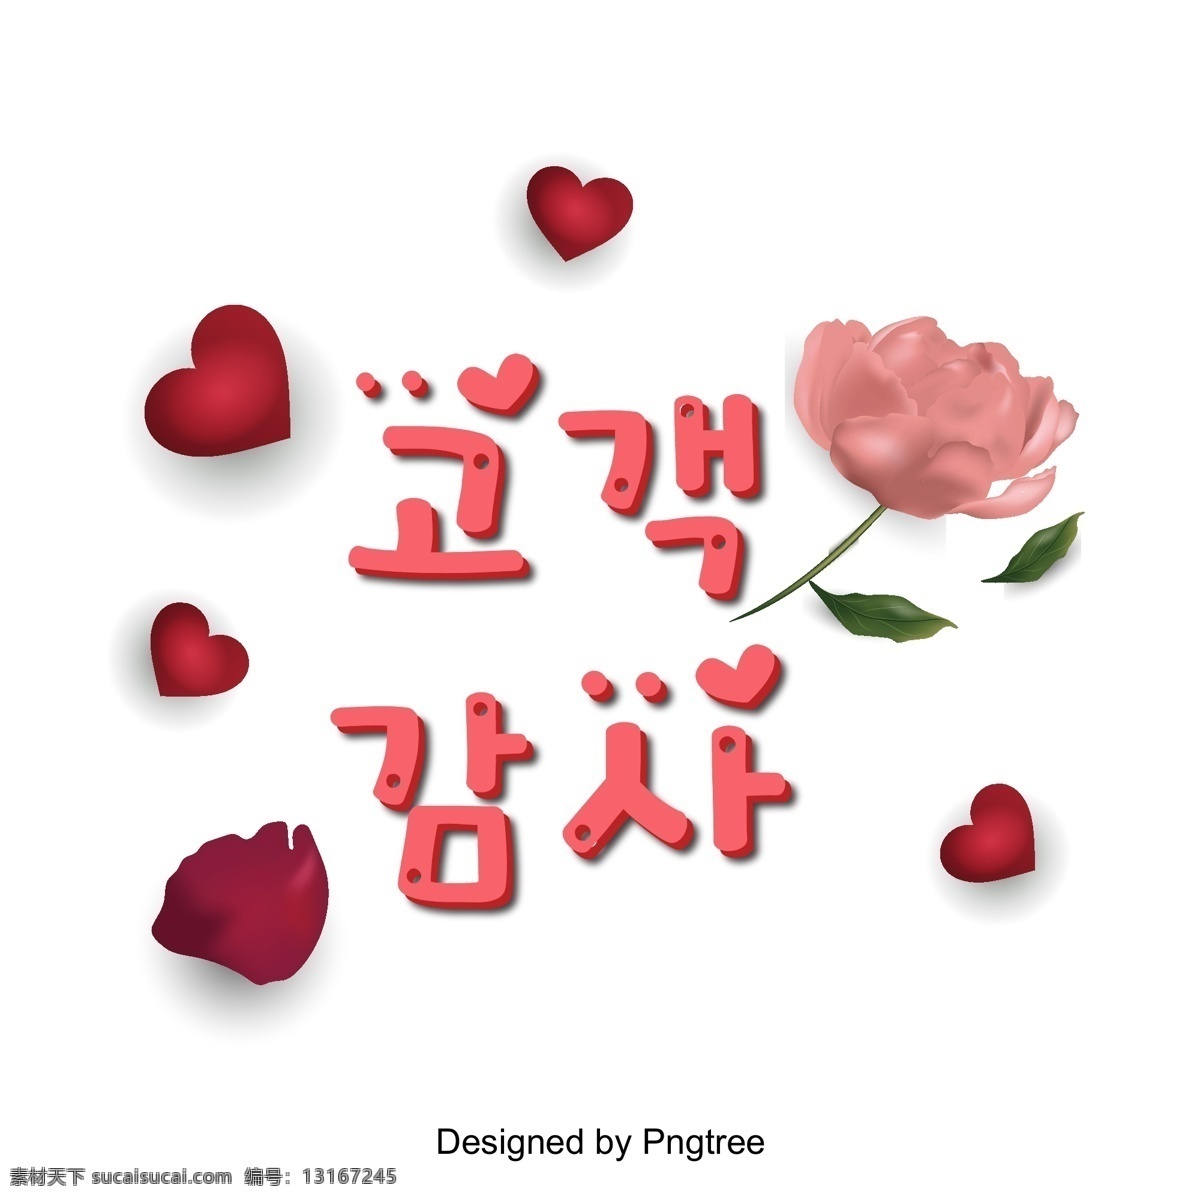 客户 谢谢 粉红 玫瑰红色 字体 客户审计 粉 玫瑰 心脏形 韩文 现场 向量 立体 进步